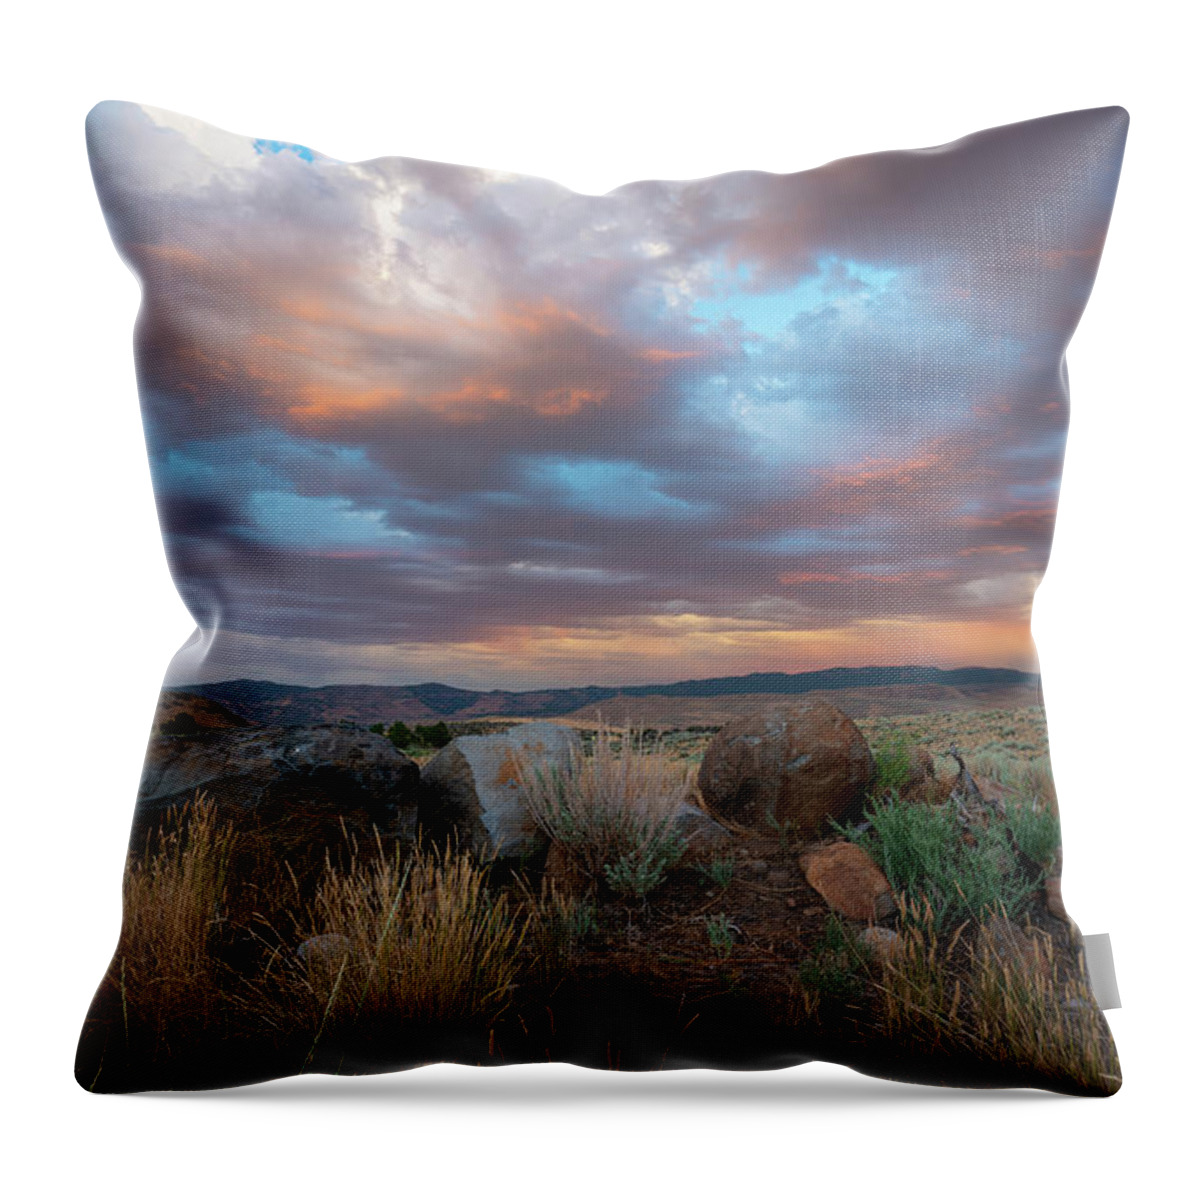 Sunset Throw Pillow featuring the photograph High Desert Golden Hour by Ron Long Ltd Photography